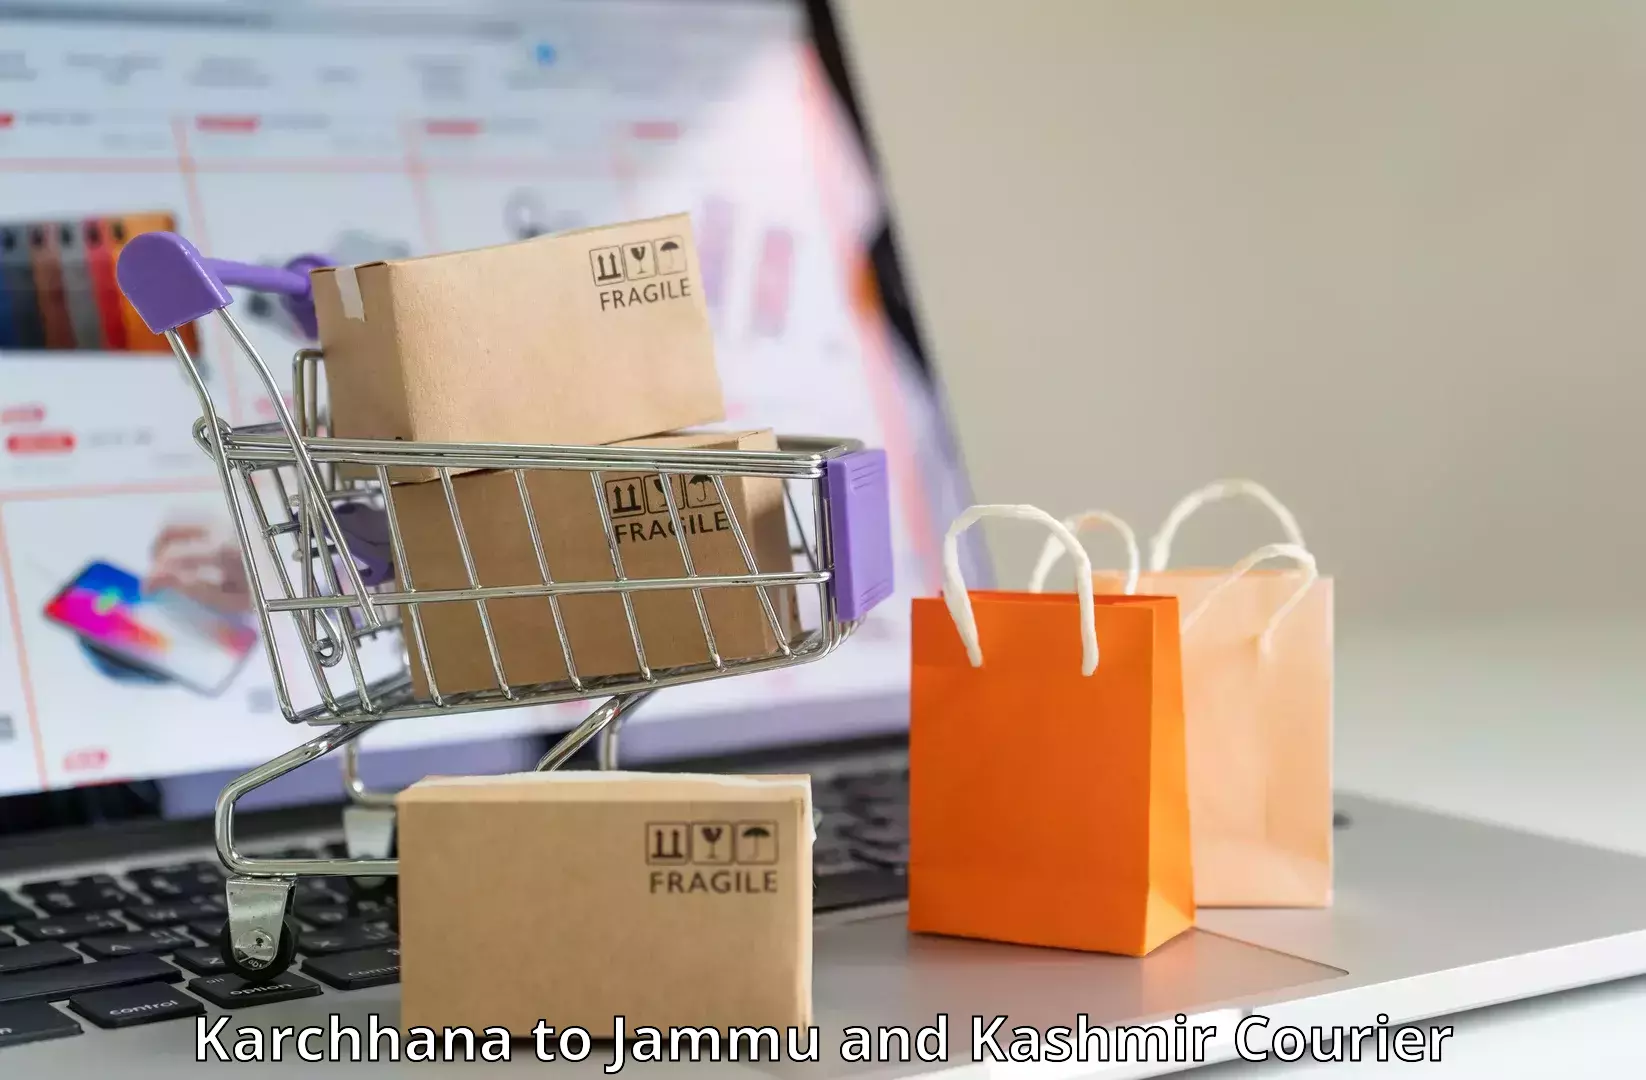 E-commerce shipping partnerships Karchhana to Kargil